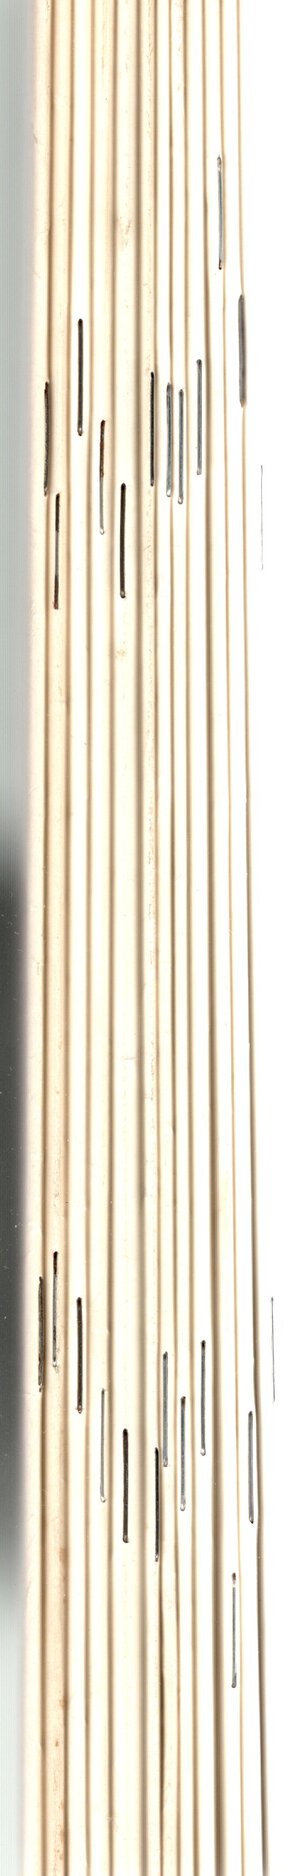 obverse: GAZETTE NUMISMATIQUE SUISSE. Bern, 1975 - 1977. 12 fascicoli  completi. Con 250 pagine circa, con illustrazioni Brossure editoriale, ottimo stato. importanti articoli di numismatica antica a medioevale.